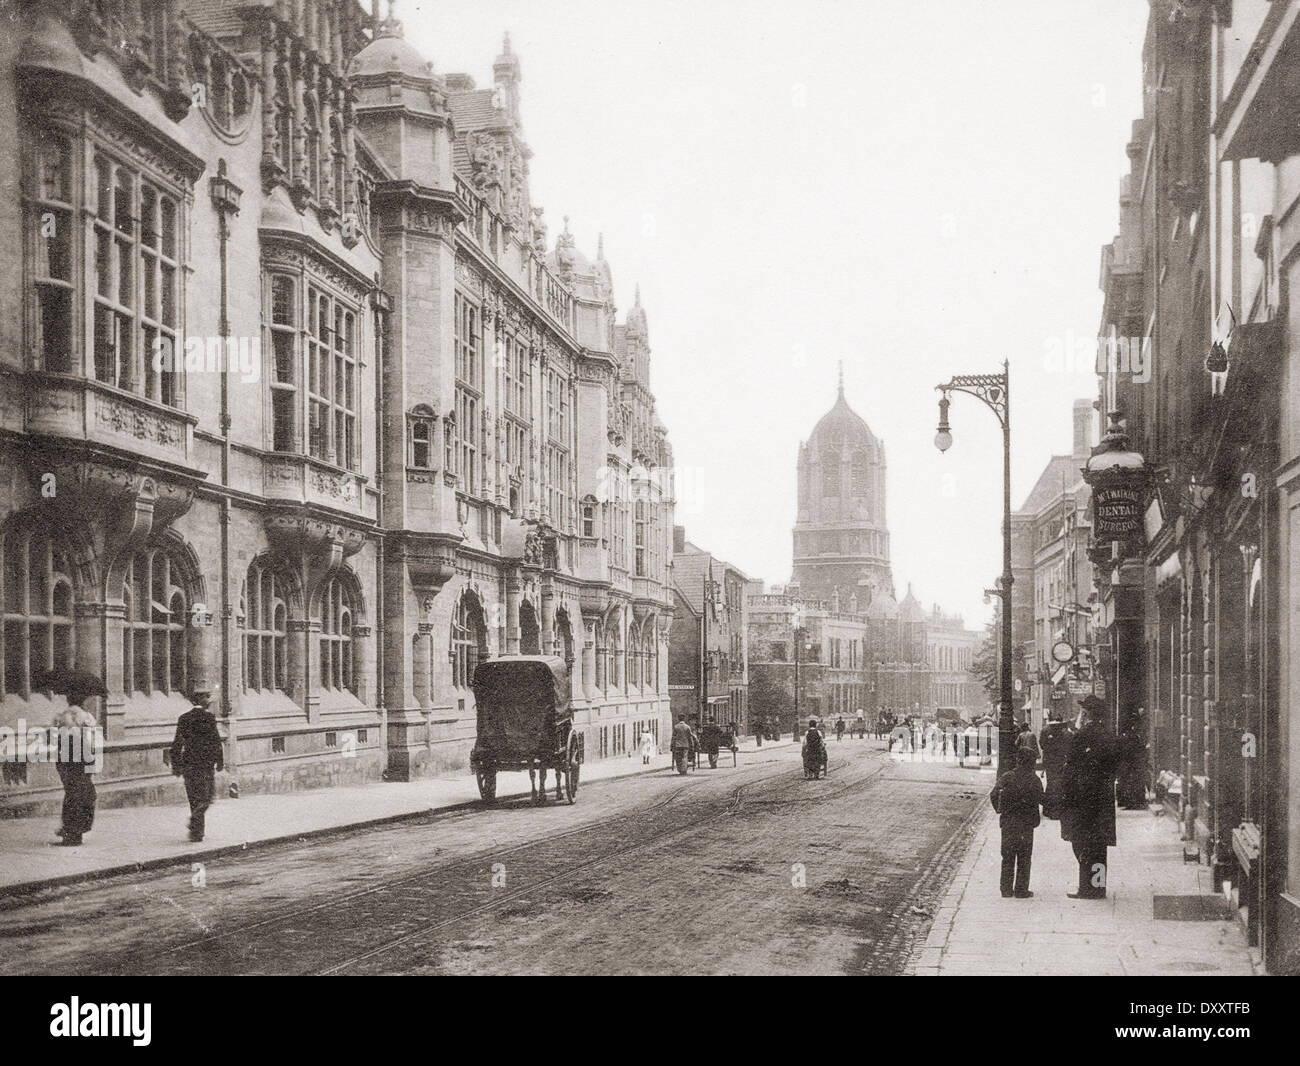 Carfax Tower et du gaz d'éclairage de rue, Oxford, England, UK vers 1890 Banque D'Images